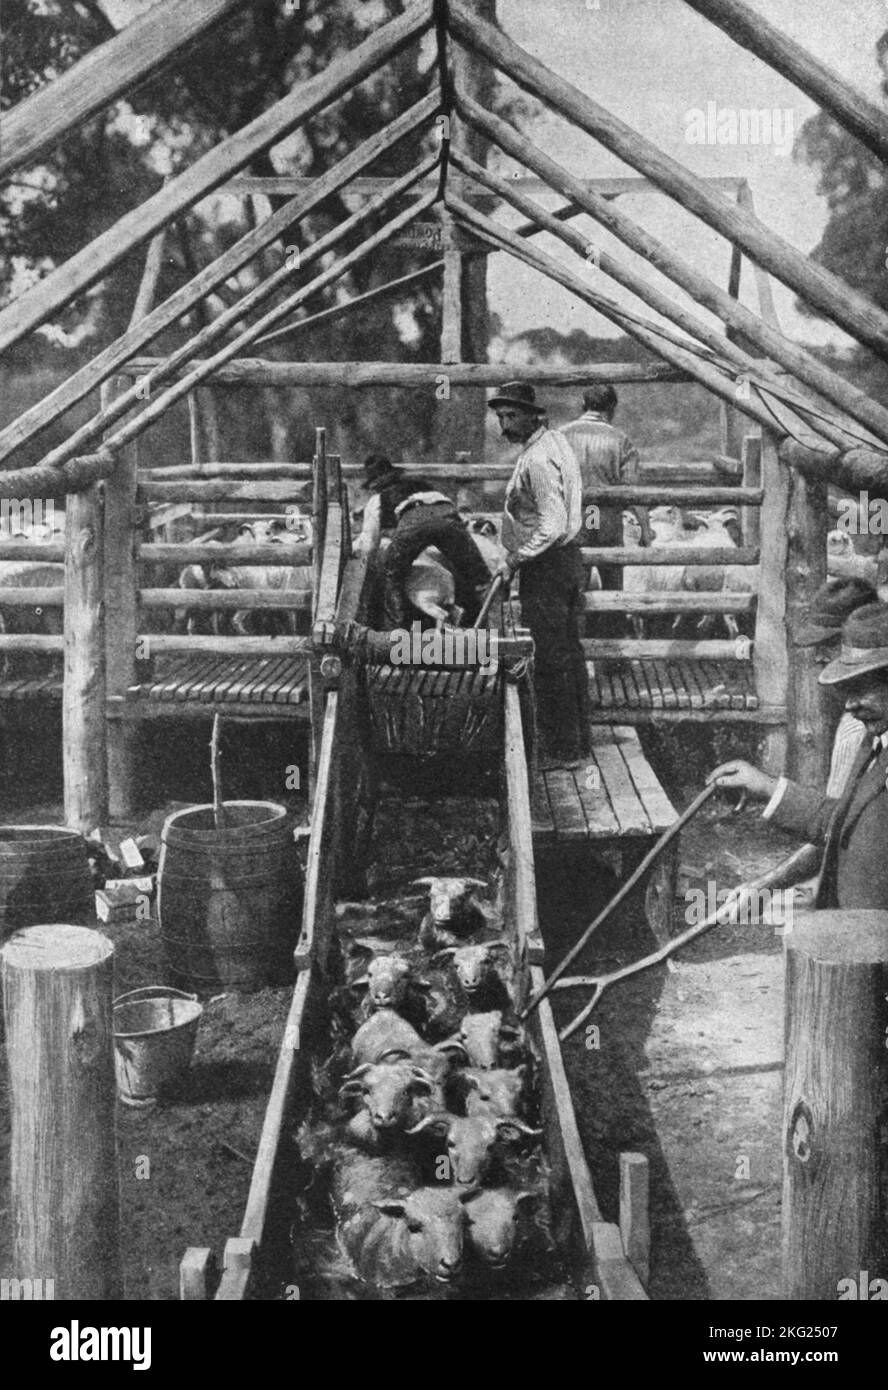 Vintage-Foto um 1900 zeigt eine Herde von Riverina Peppin Merino Schafen in New South Wales Australien, die in eine Arsenlösung getaucht wurden, um Parasiten auszurotten Stockfoto